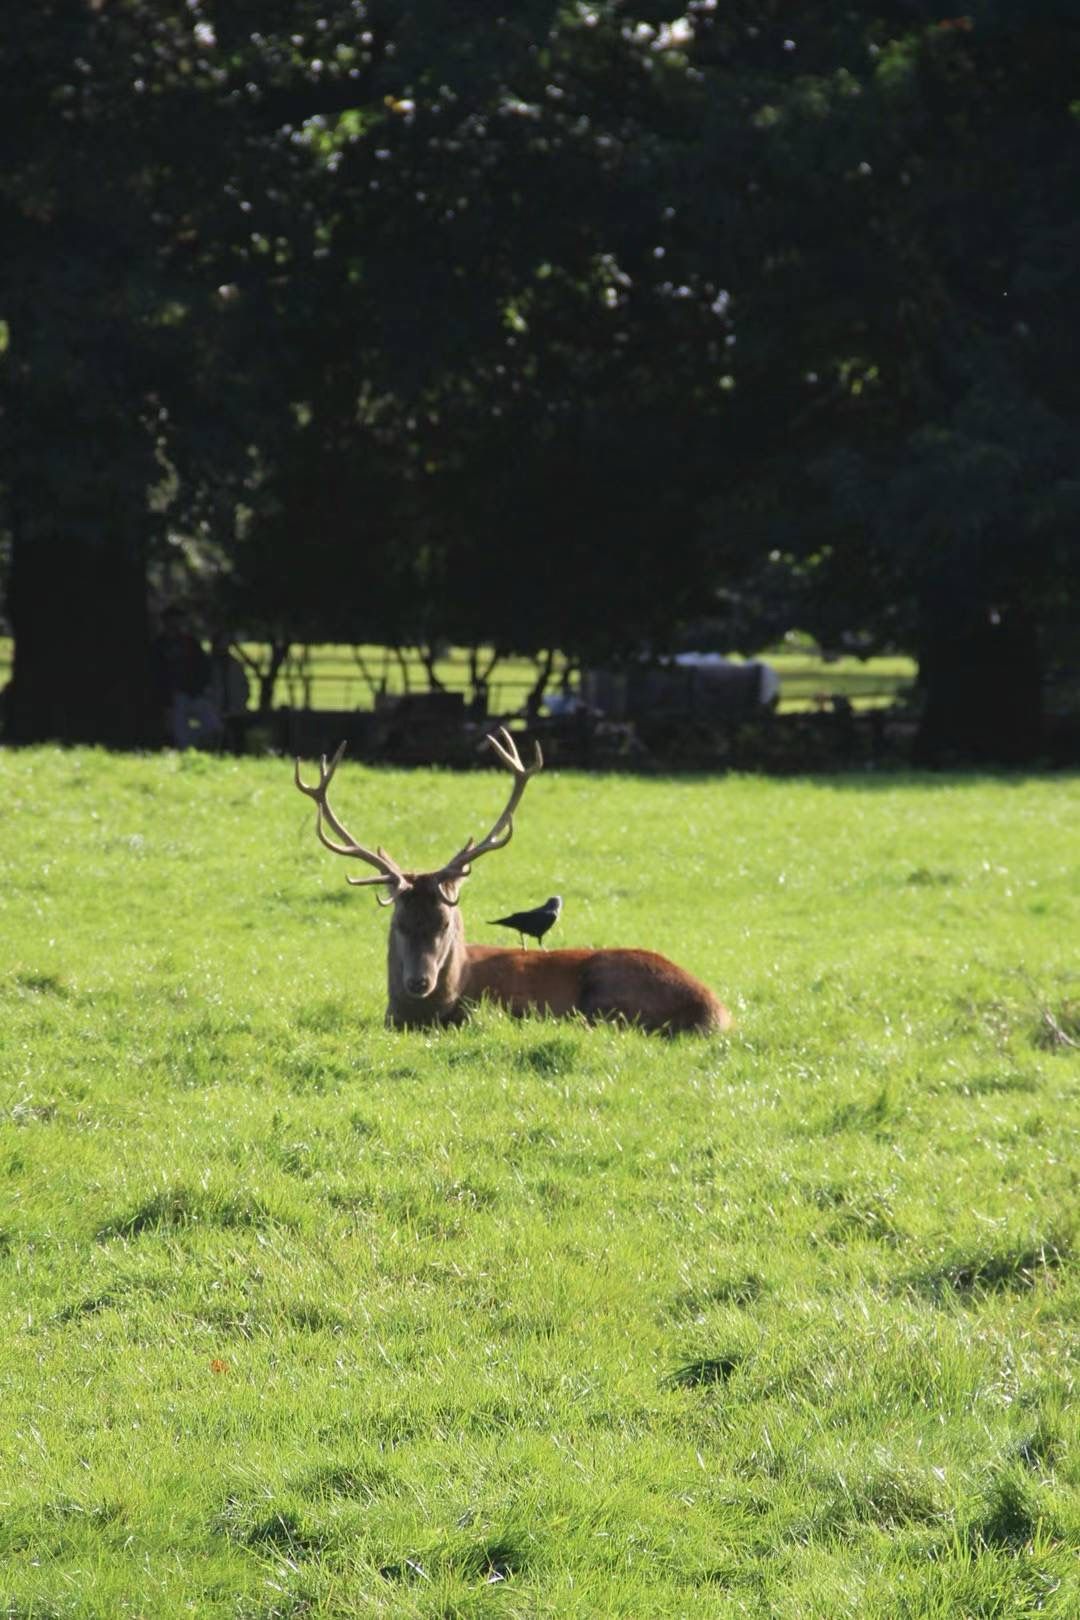 Student activities in Nottingham - Wollaton deer park